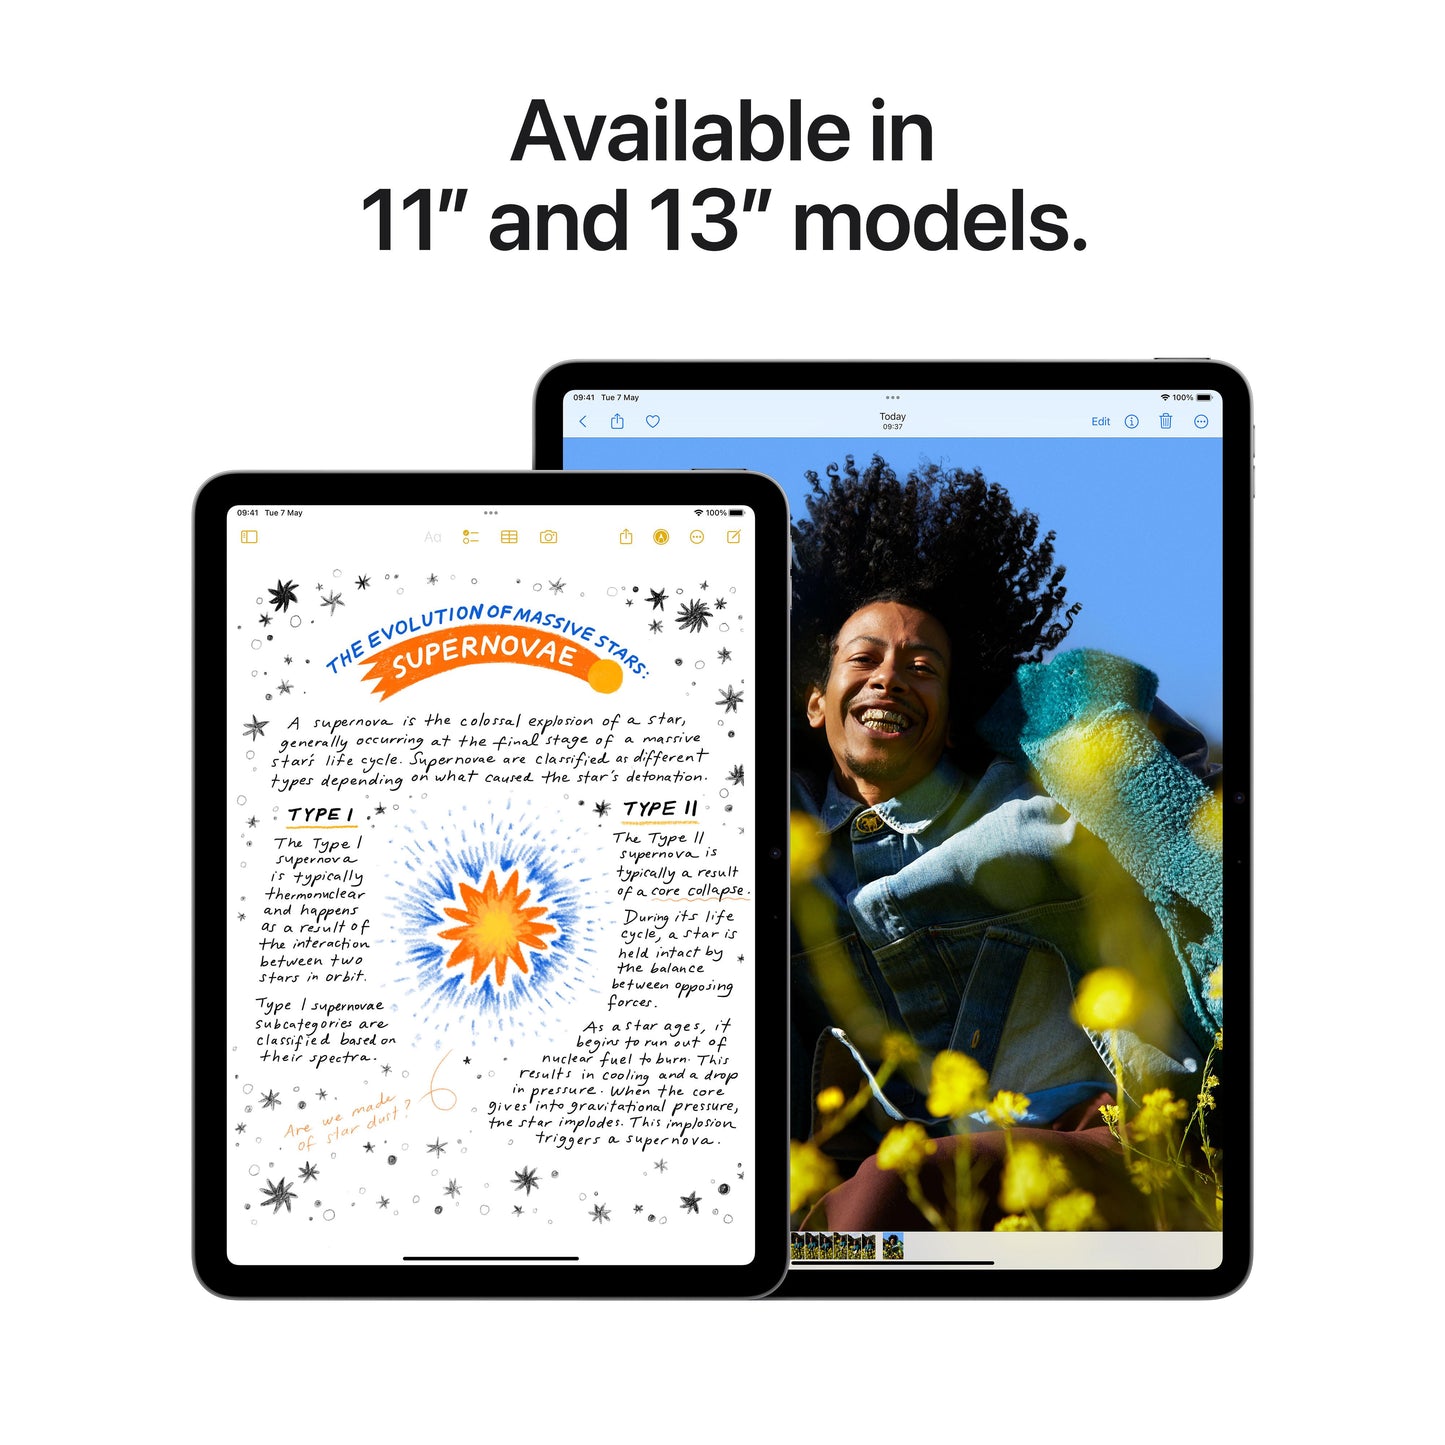 11-inch iPad Air Wi-Fi 256GB - Purple (M2)